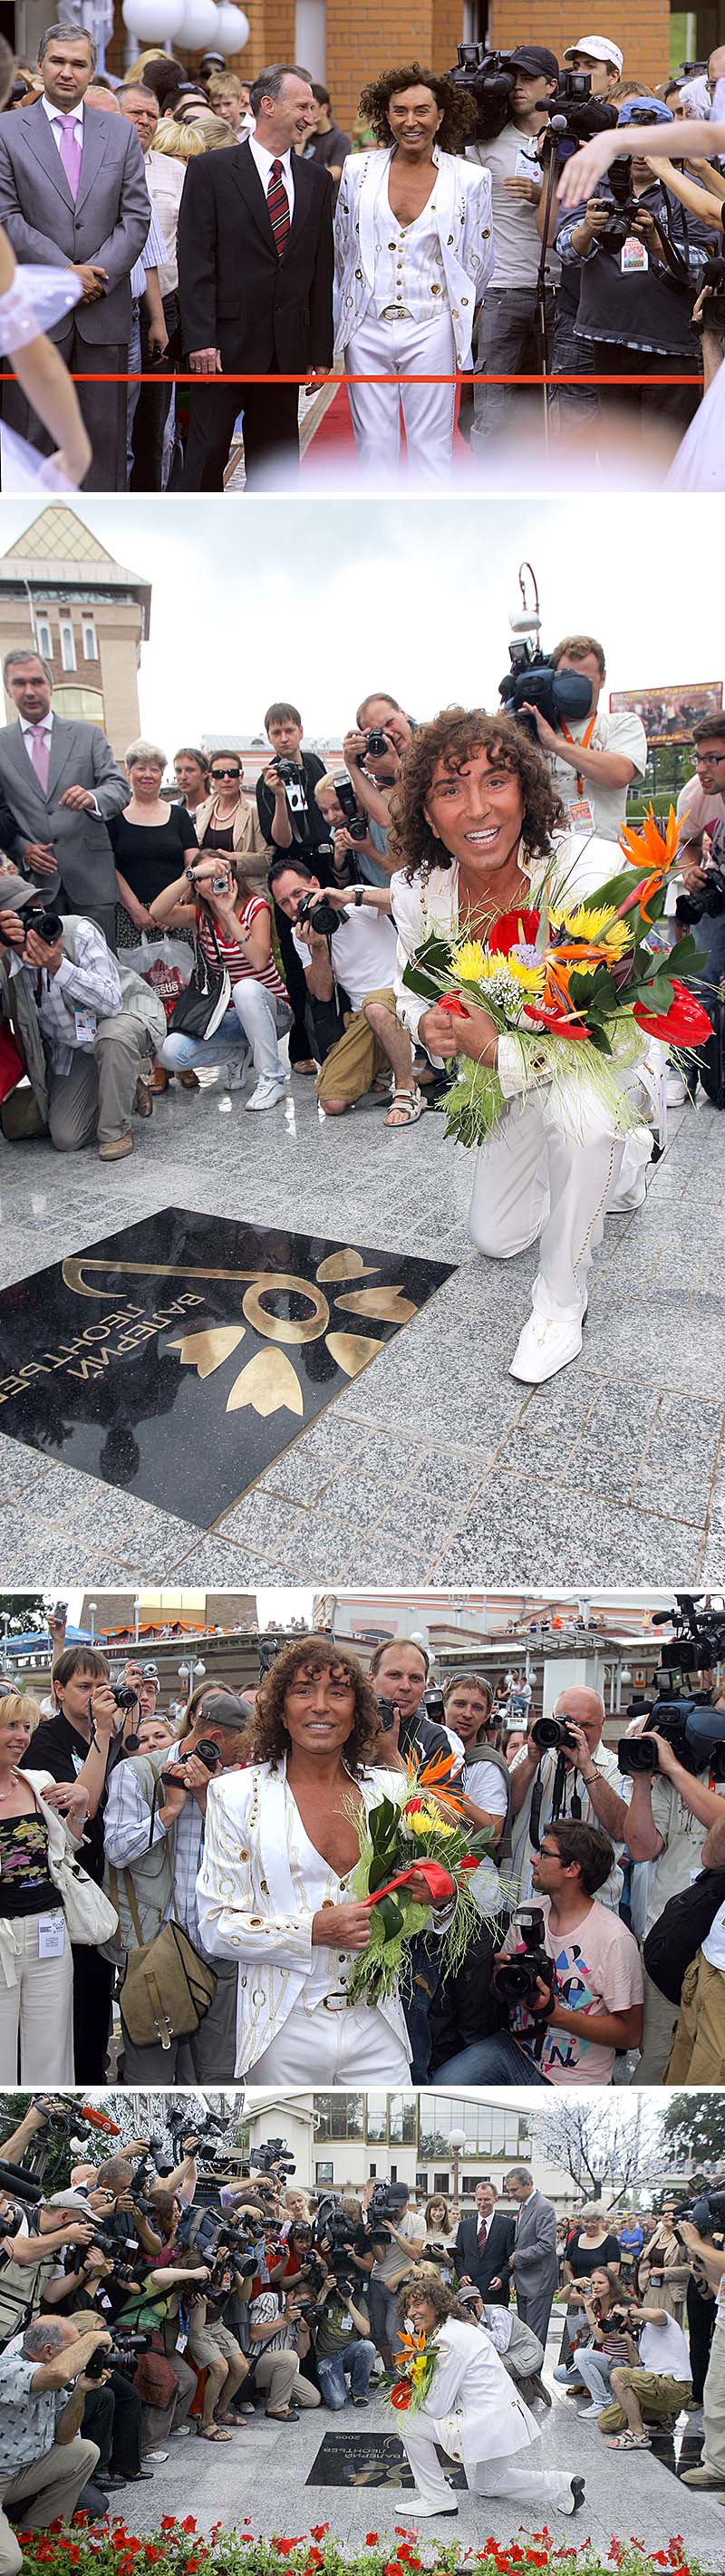 俄罗斯人民艺术家瓦列里•列昂尼齐耶夫在维捷布斯克的星光大道上开启了记名的矢车菊